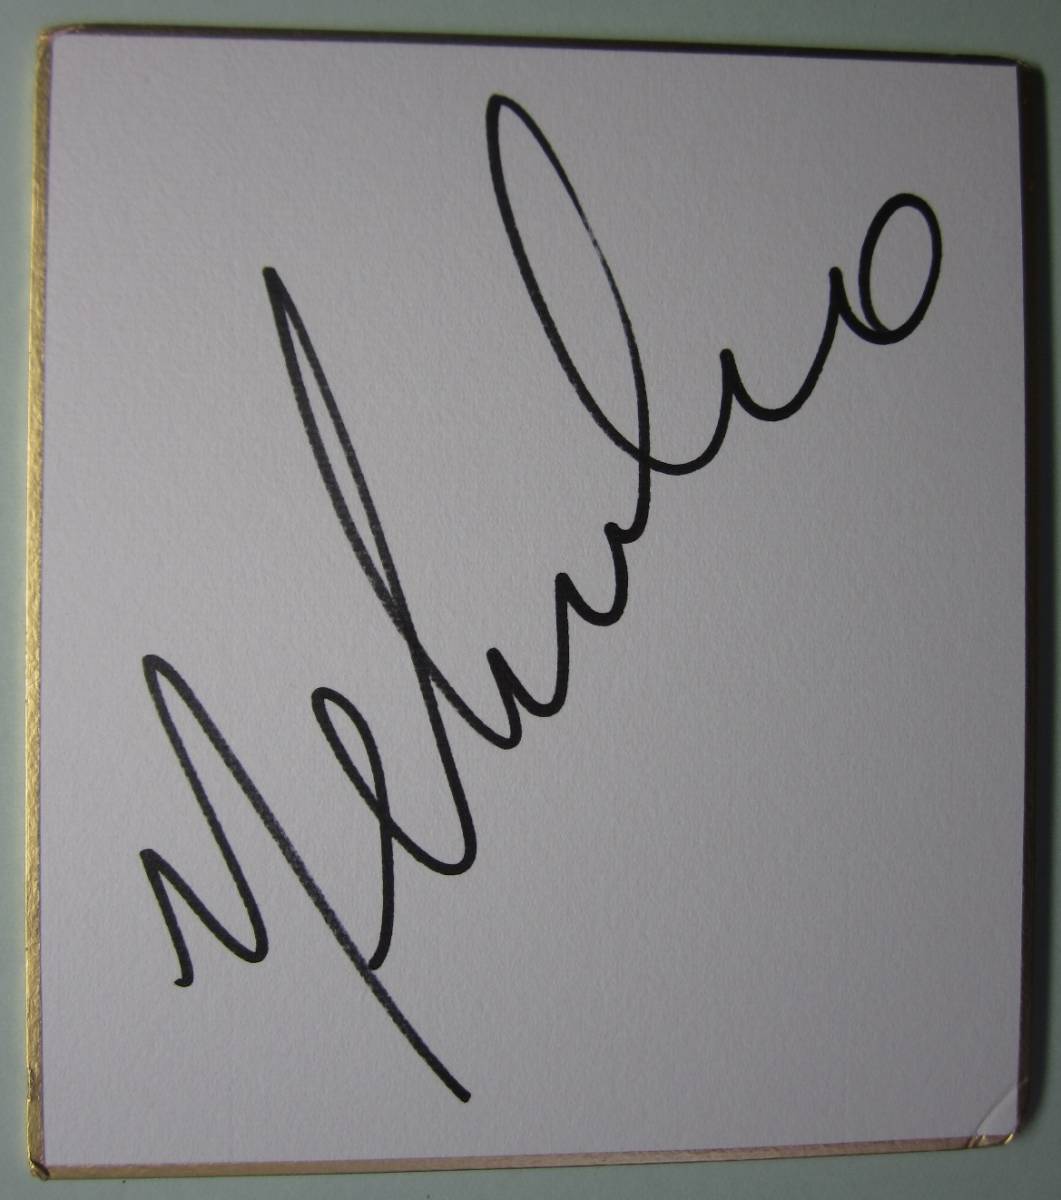 Shikishi autografiado del director Nelsinho - Envío gratis, fútbol, Recuerdo, Bienes relacionados, firmar